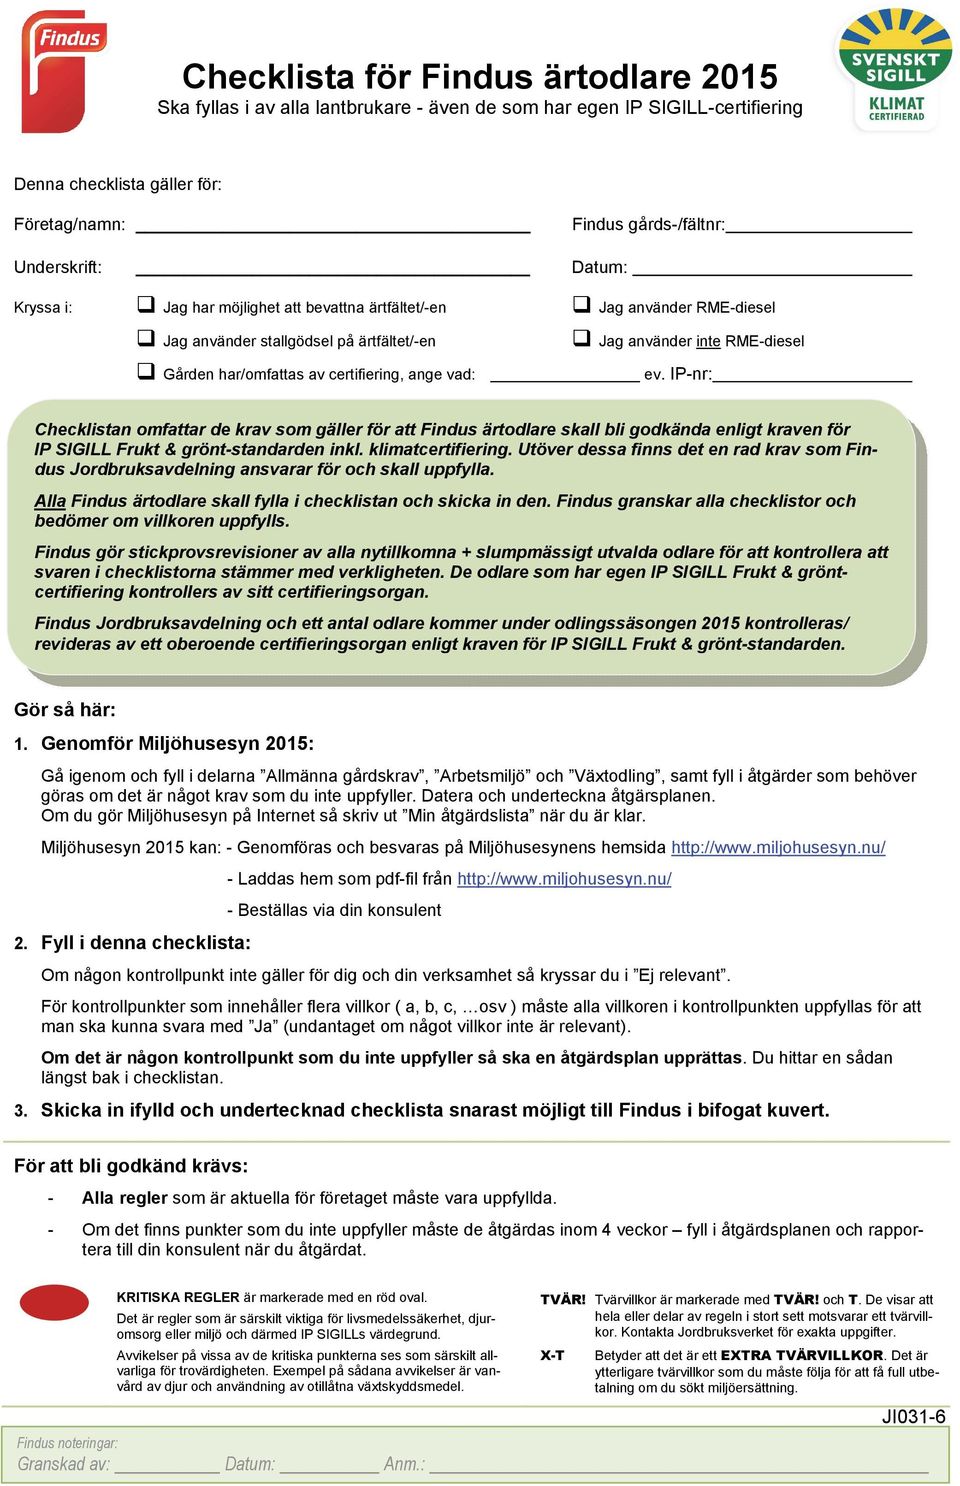 RME-diesel ev. IP-nr: Checklistan omfattar de krav som gäller för att Findus ärtodlare skall bli godkända enligt kraven för IP SIGILL Frukt & grönt-standarden inkl. klimatcertifiering.